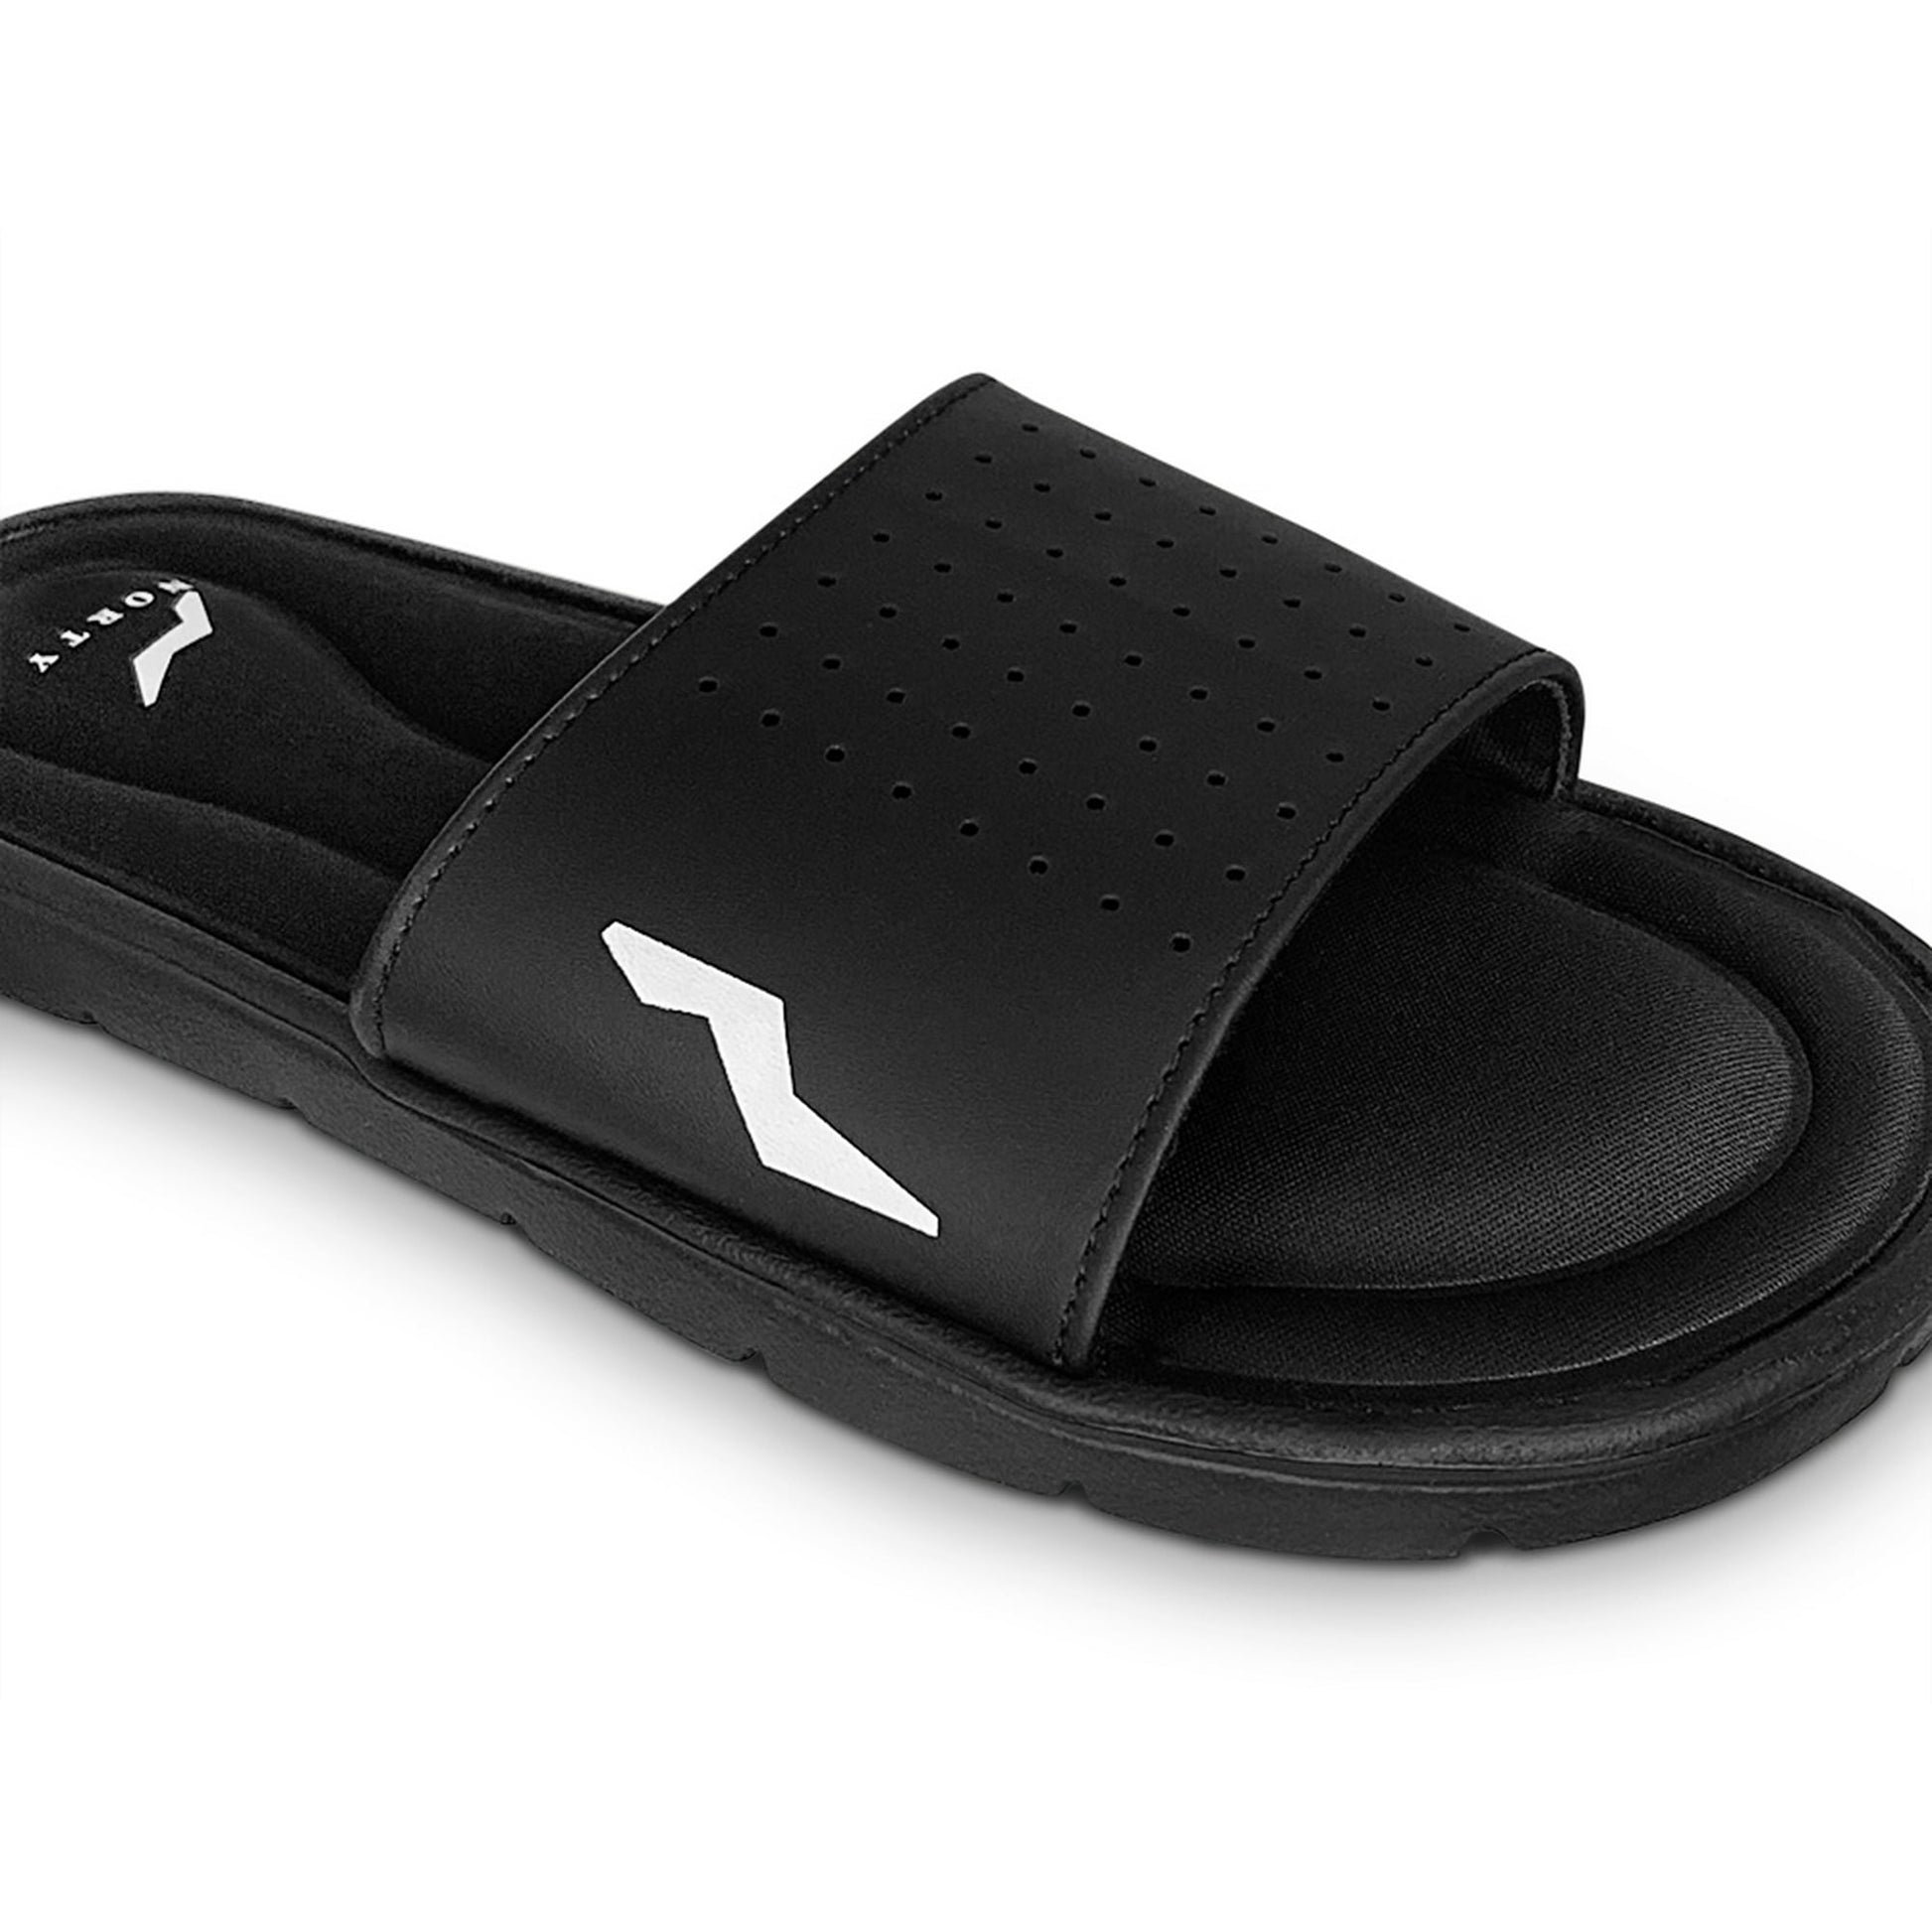 NORTY Mens Memory Foam Slides Adult Male Slide Sandals Black (12132)